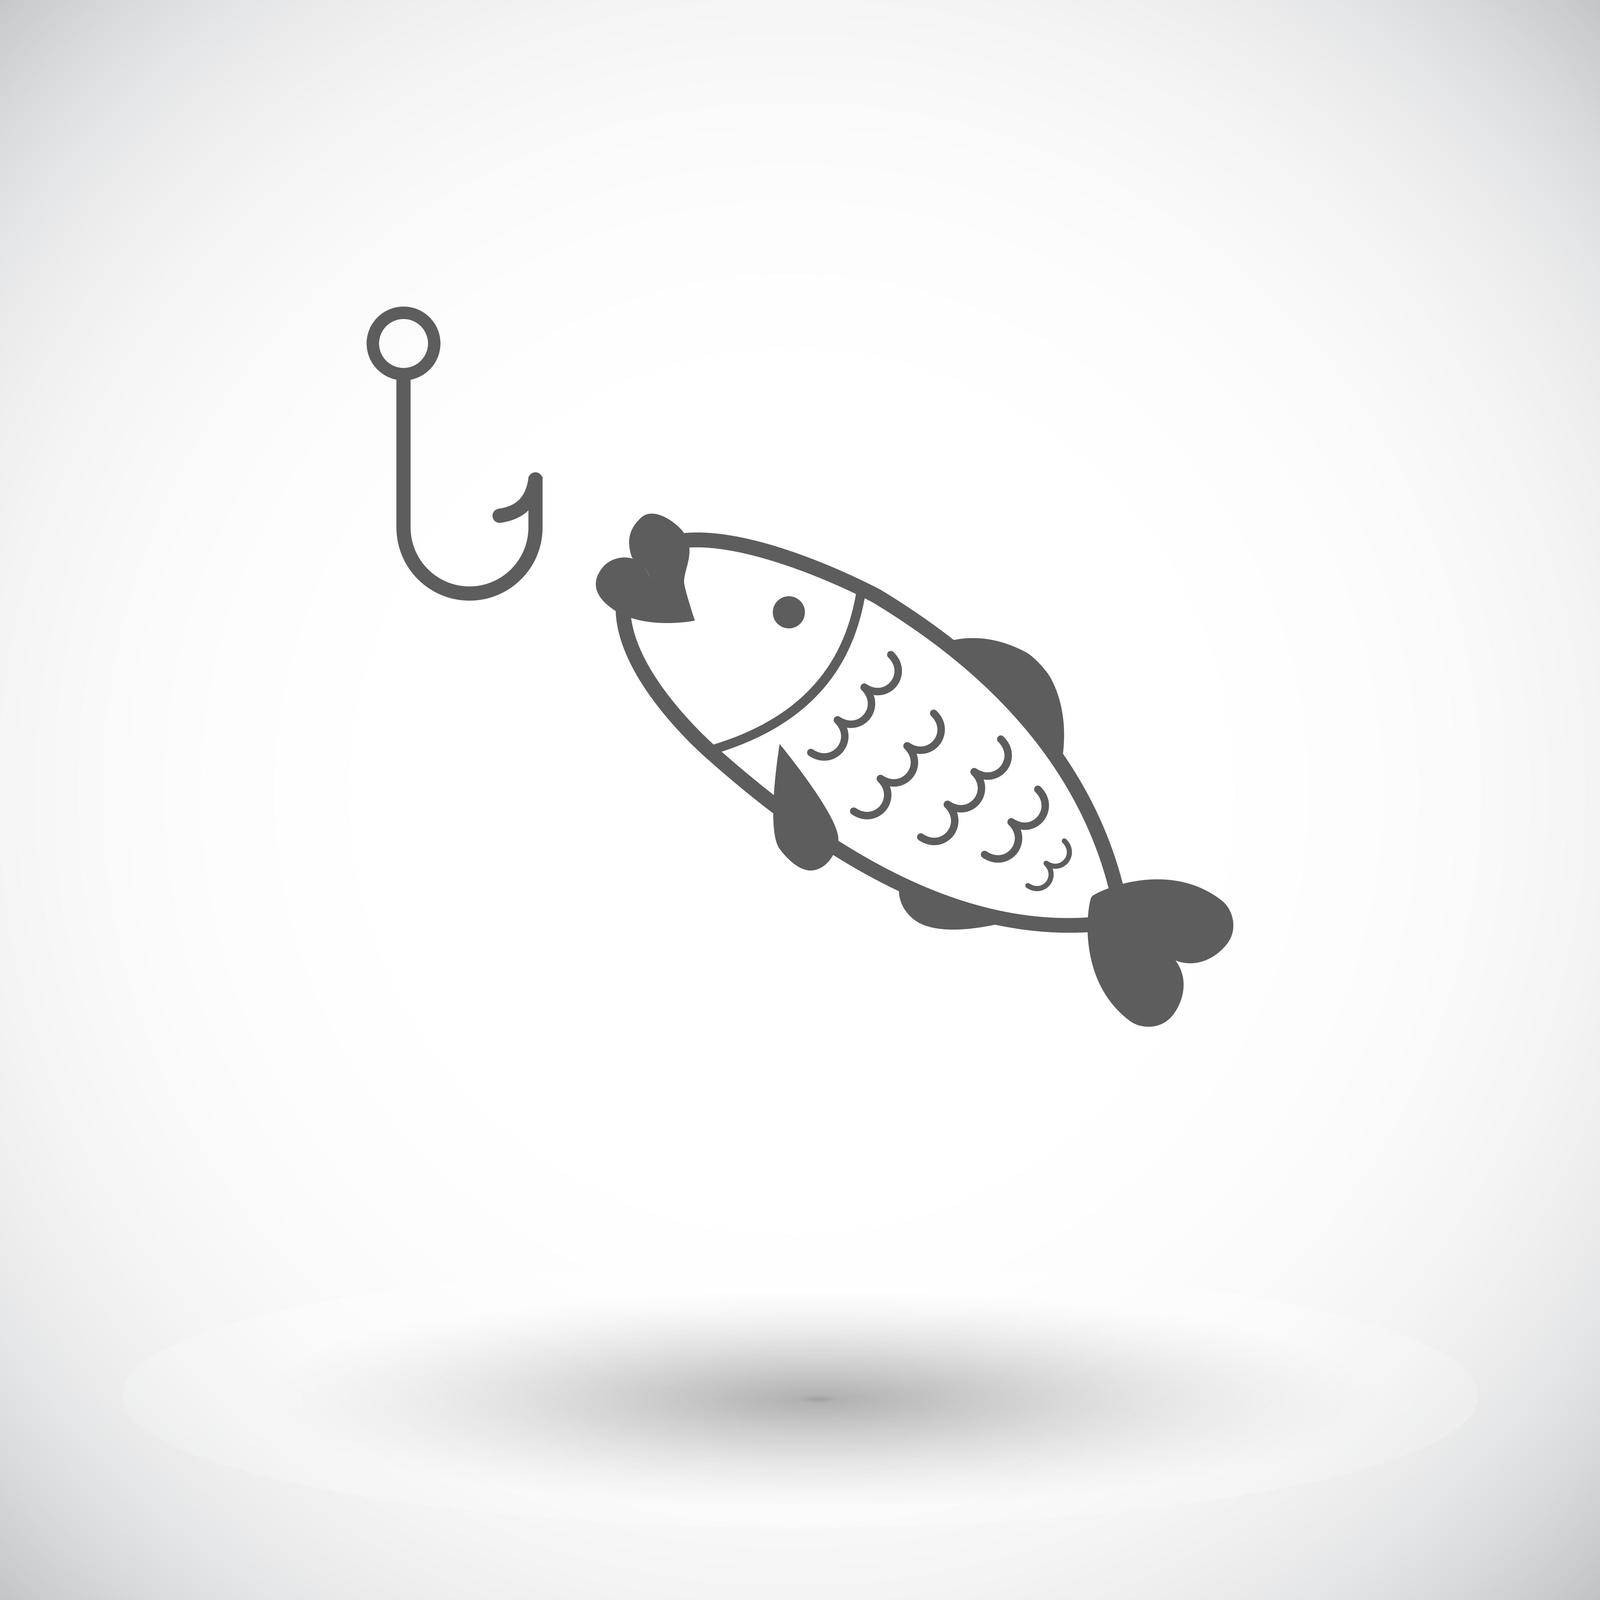 Fishing. Single flat icon on white background. Vector illustration.